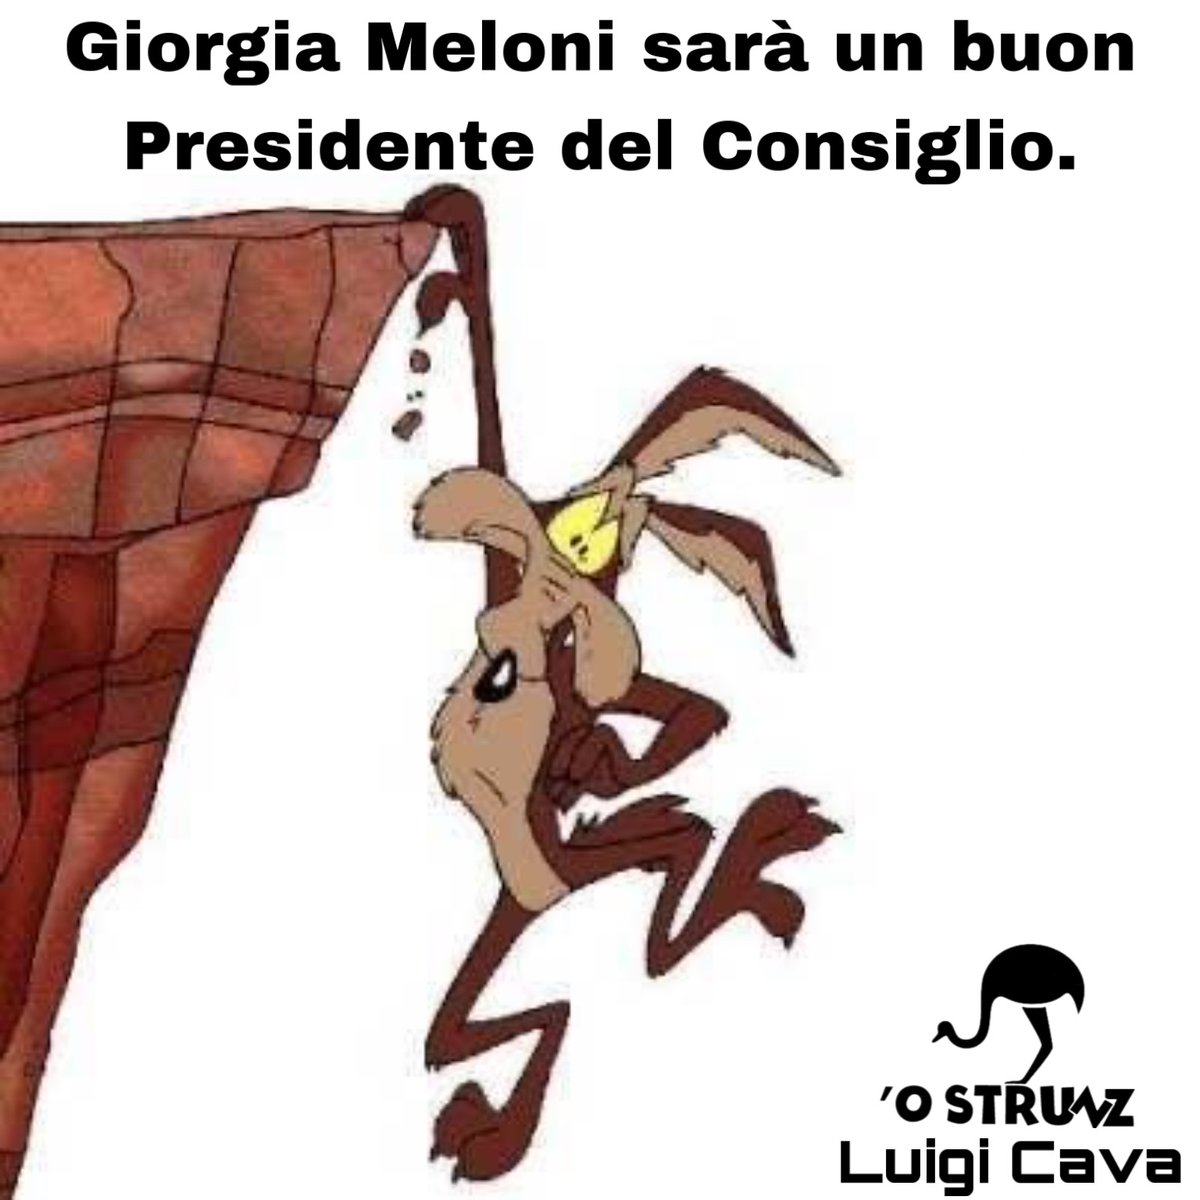 (Luigi Cava @luigicava2005)

#28settembre #ElezioniPolitiche22 #meloni #presidentedelconsiglio